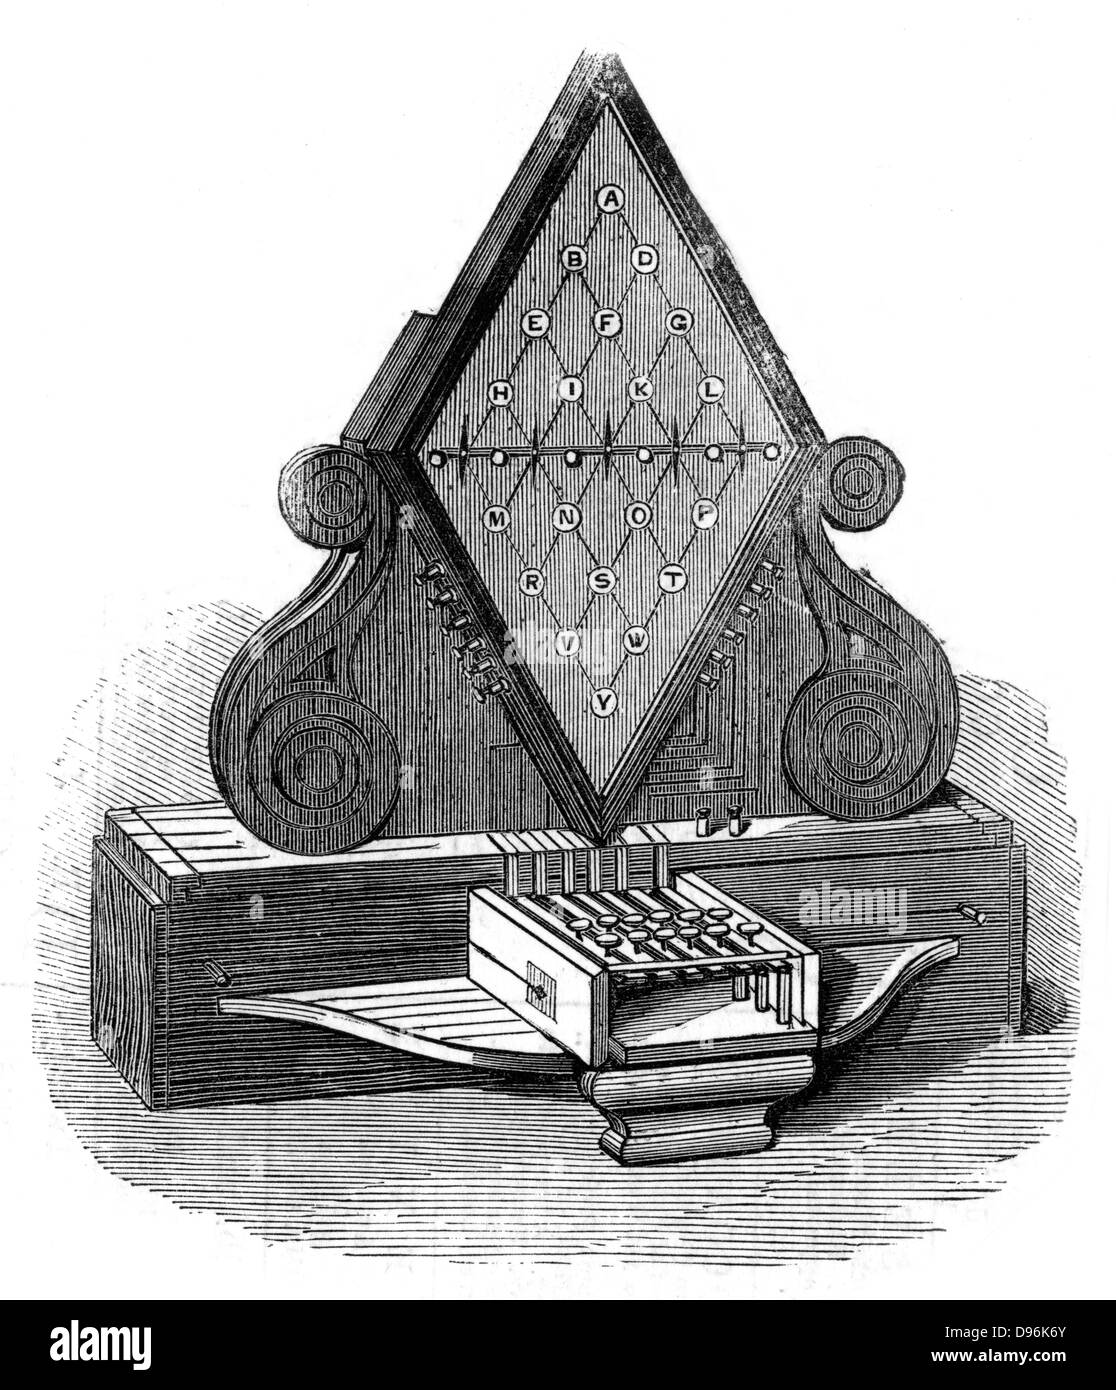 Cooke und Wheatstone fünf-Nadel-Telegrafen.  Patentierte 1837 installiert 1839. Gravur Stockfoto